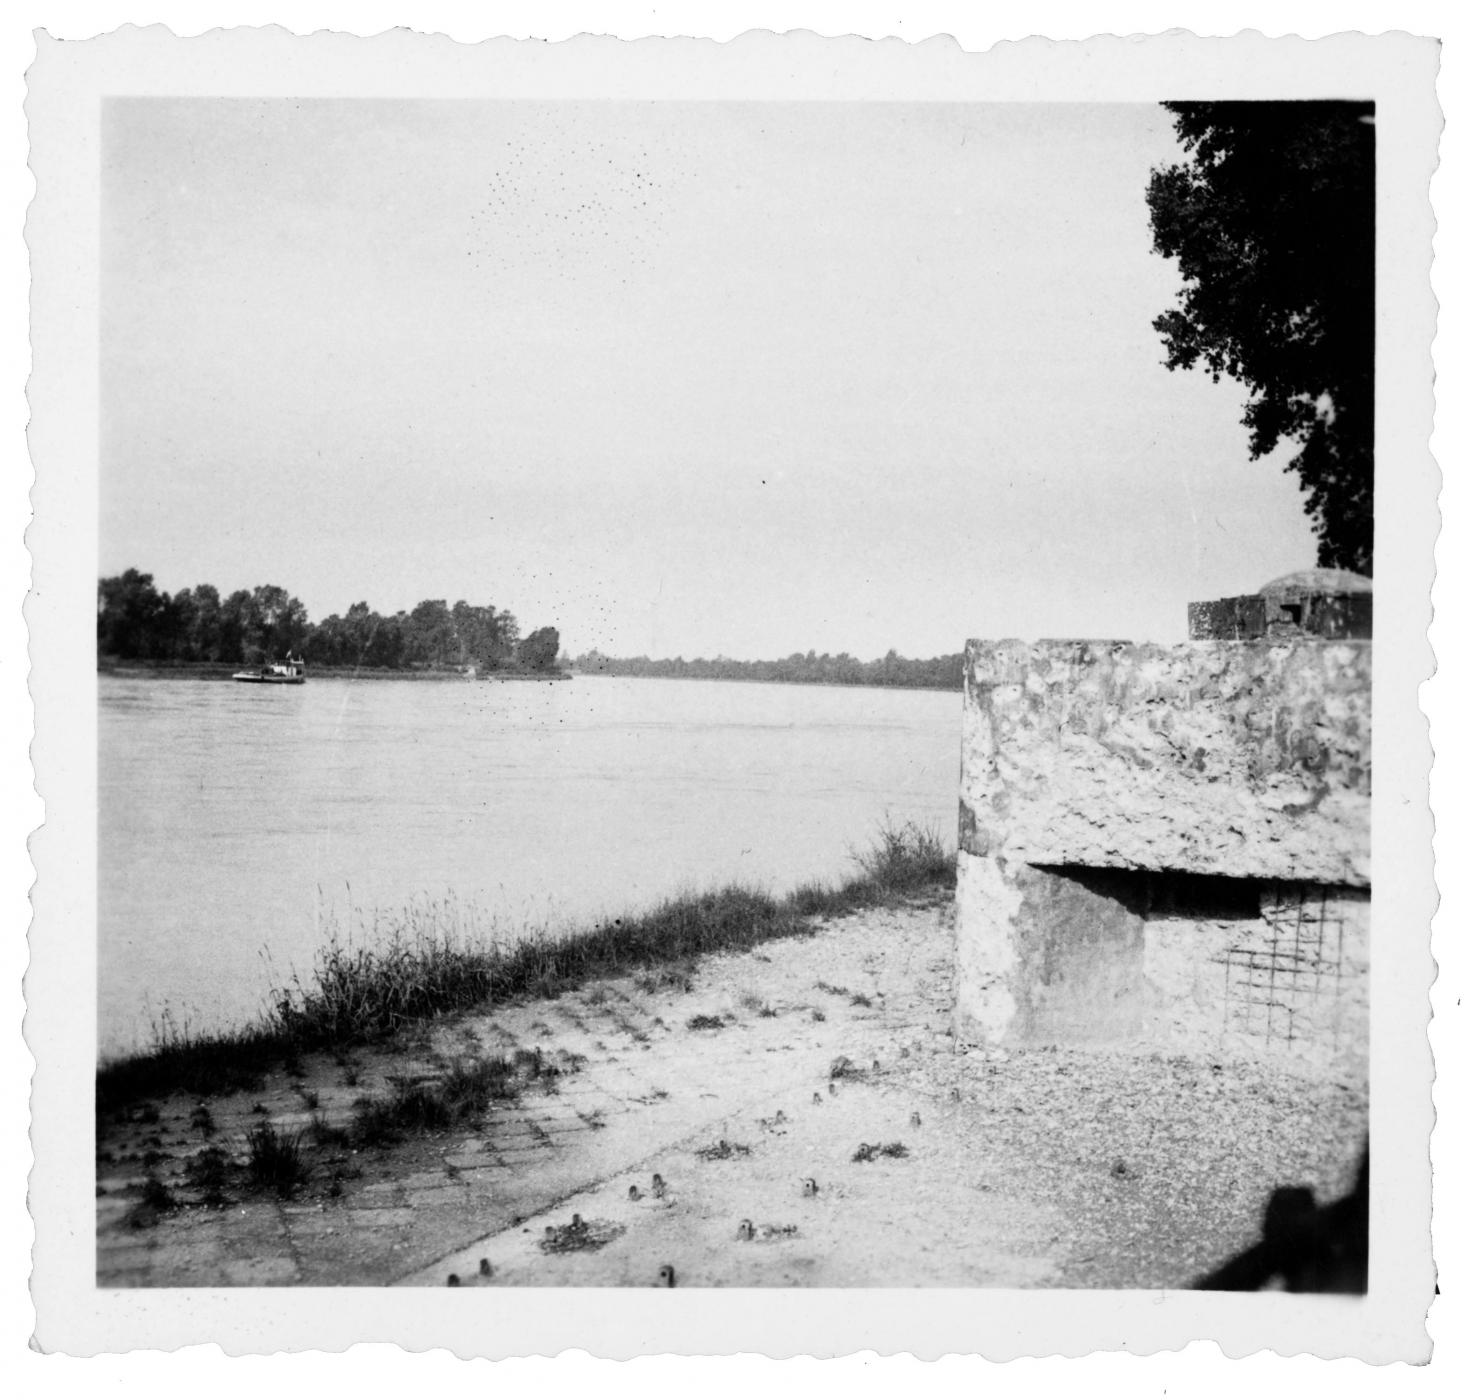 Ligne Maginot - FORT LOUIS OUEST - (Casemate d'infanterie - double) - Le Rhin vu depuis la casemate. Photo vraisemblablement prise fin juin 1940